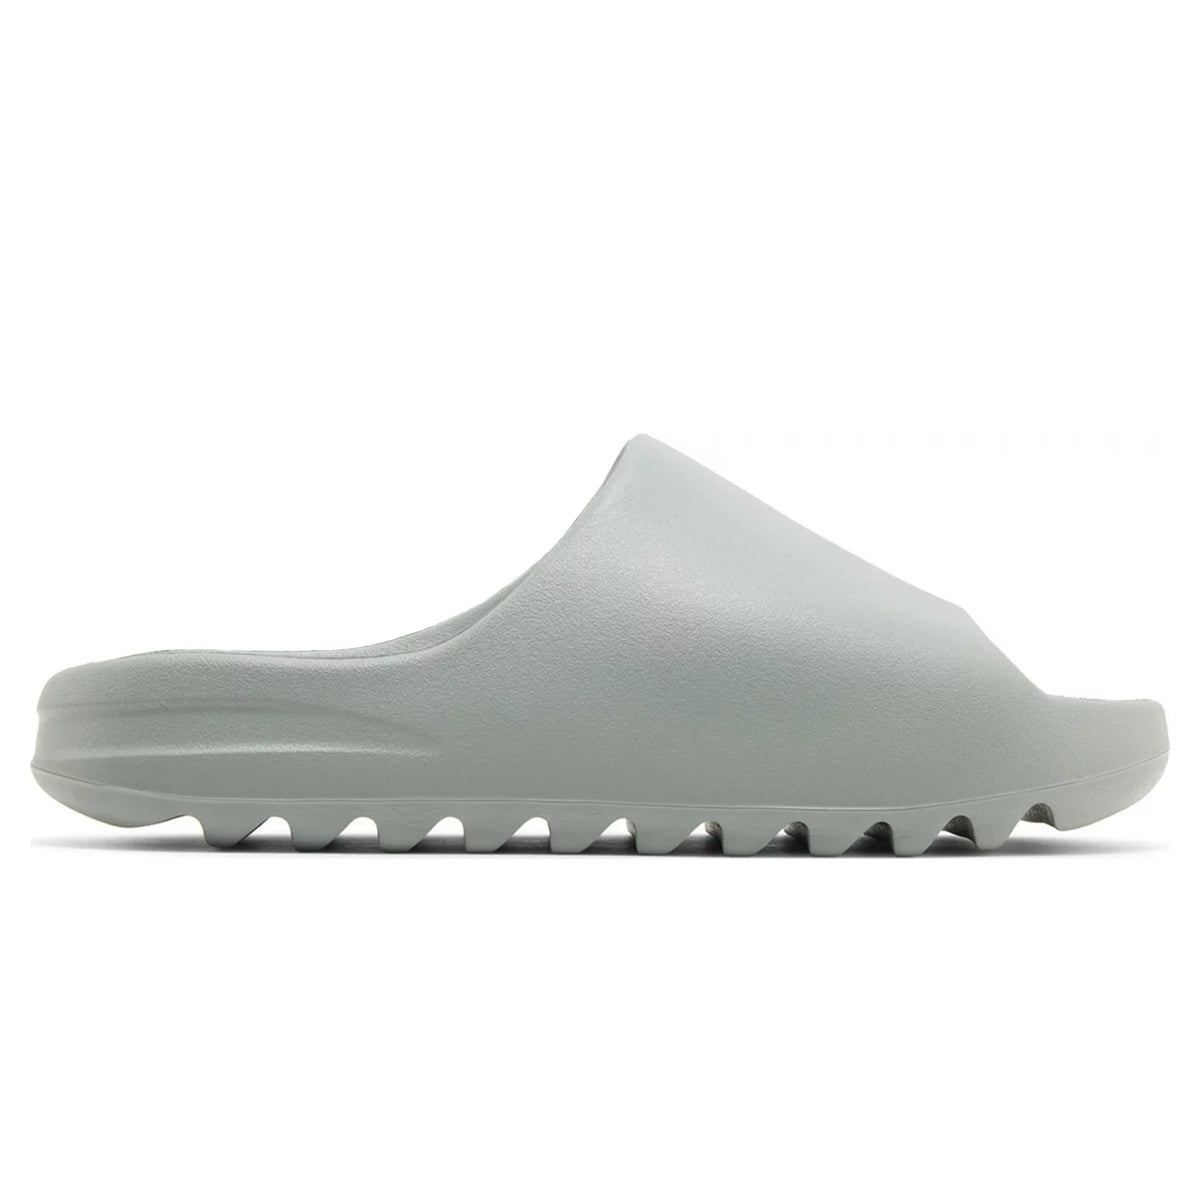 Adidas Yeezy Slide Salt UK 4 / Grey